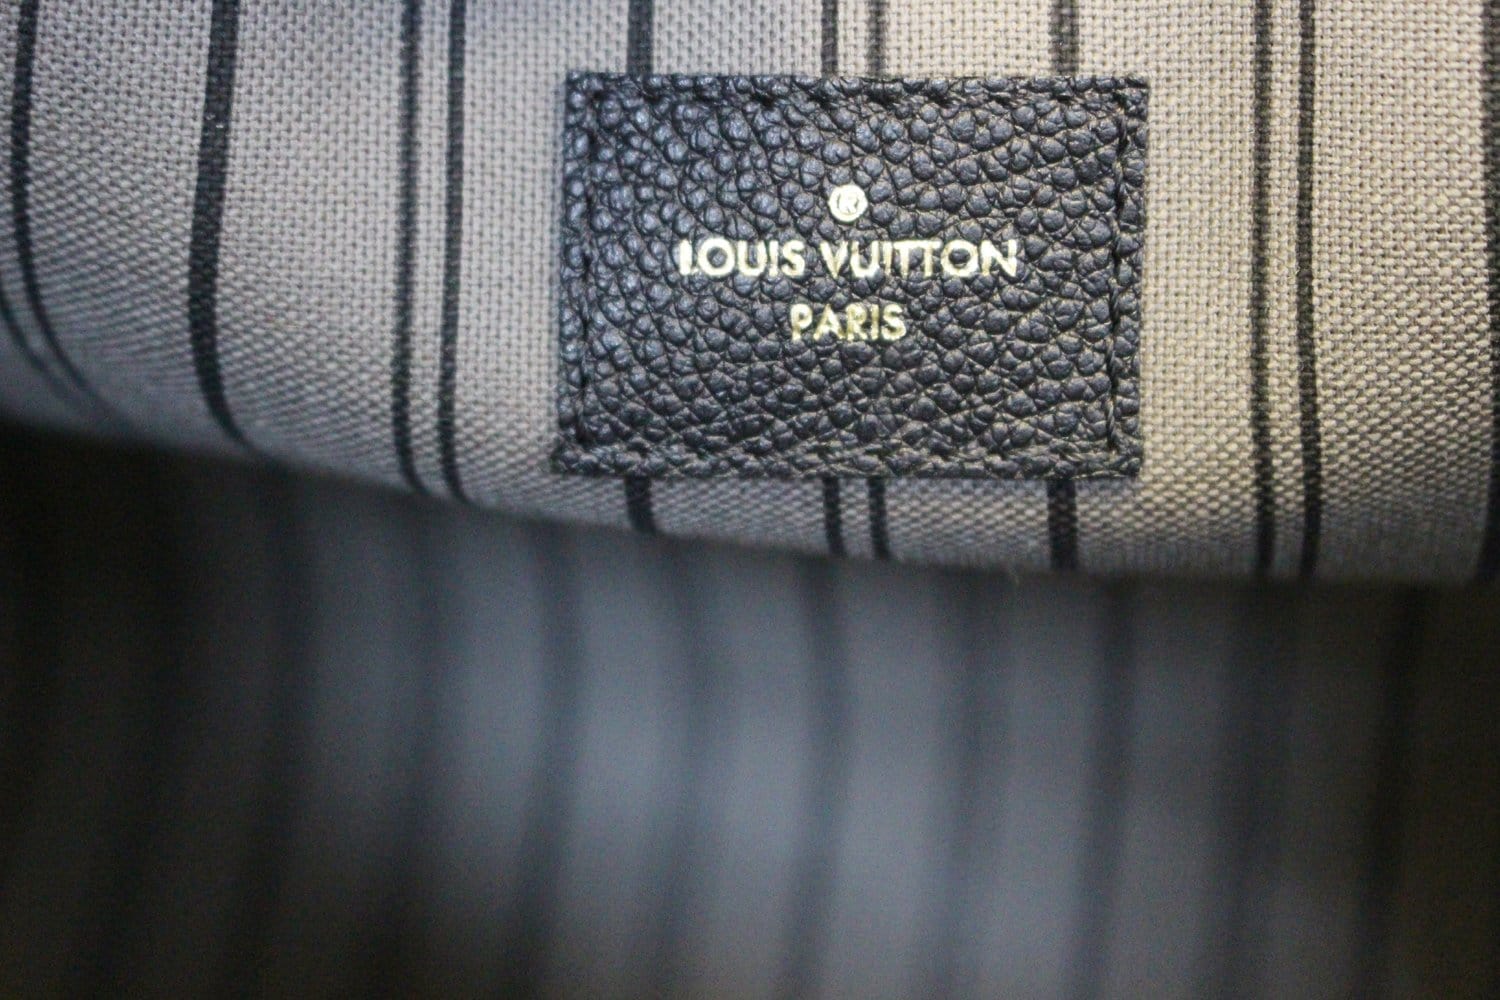 Comme des Garçons x Louis Vuitton Black Monogram Empreinte Bag